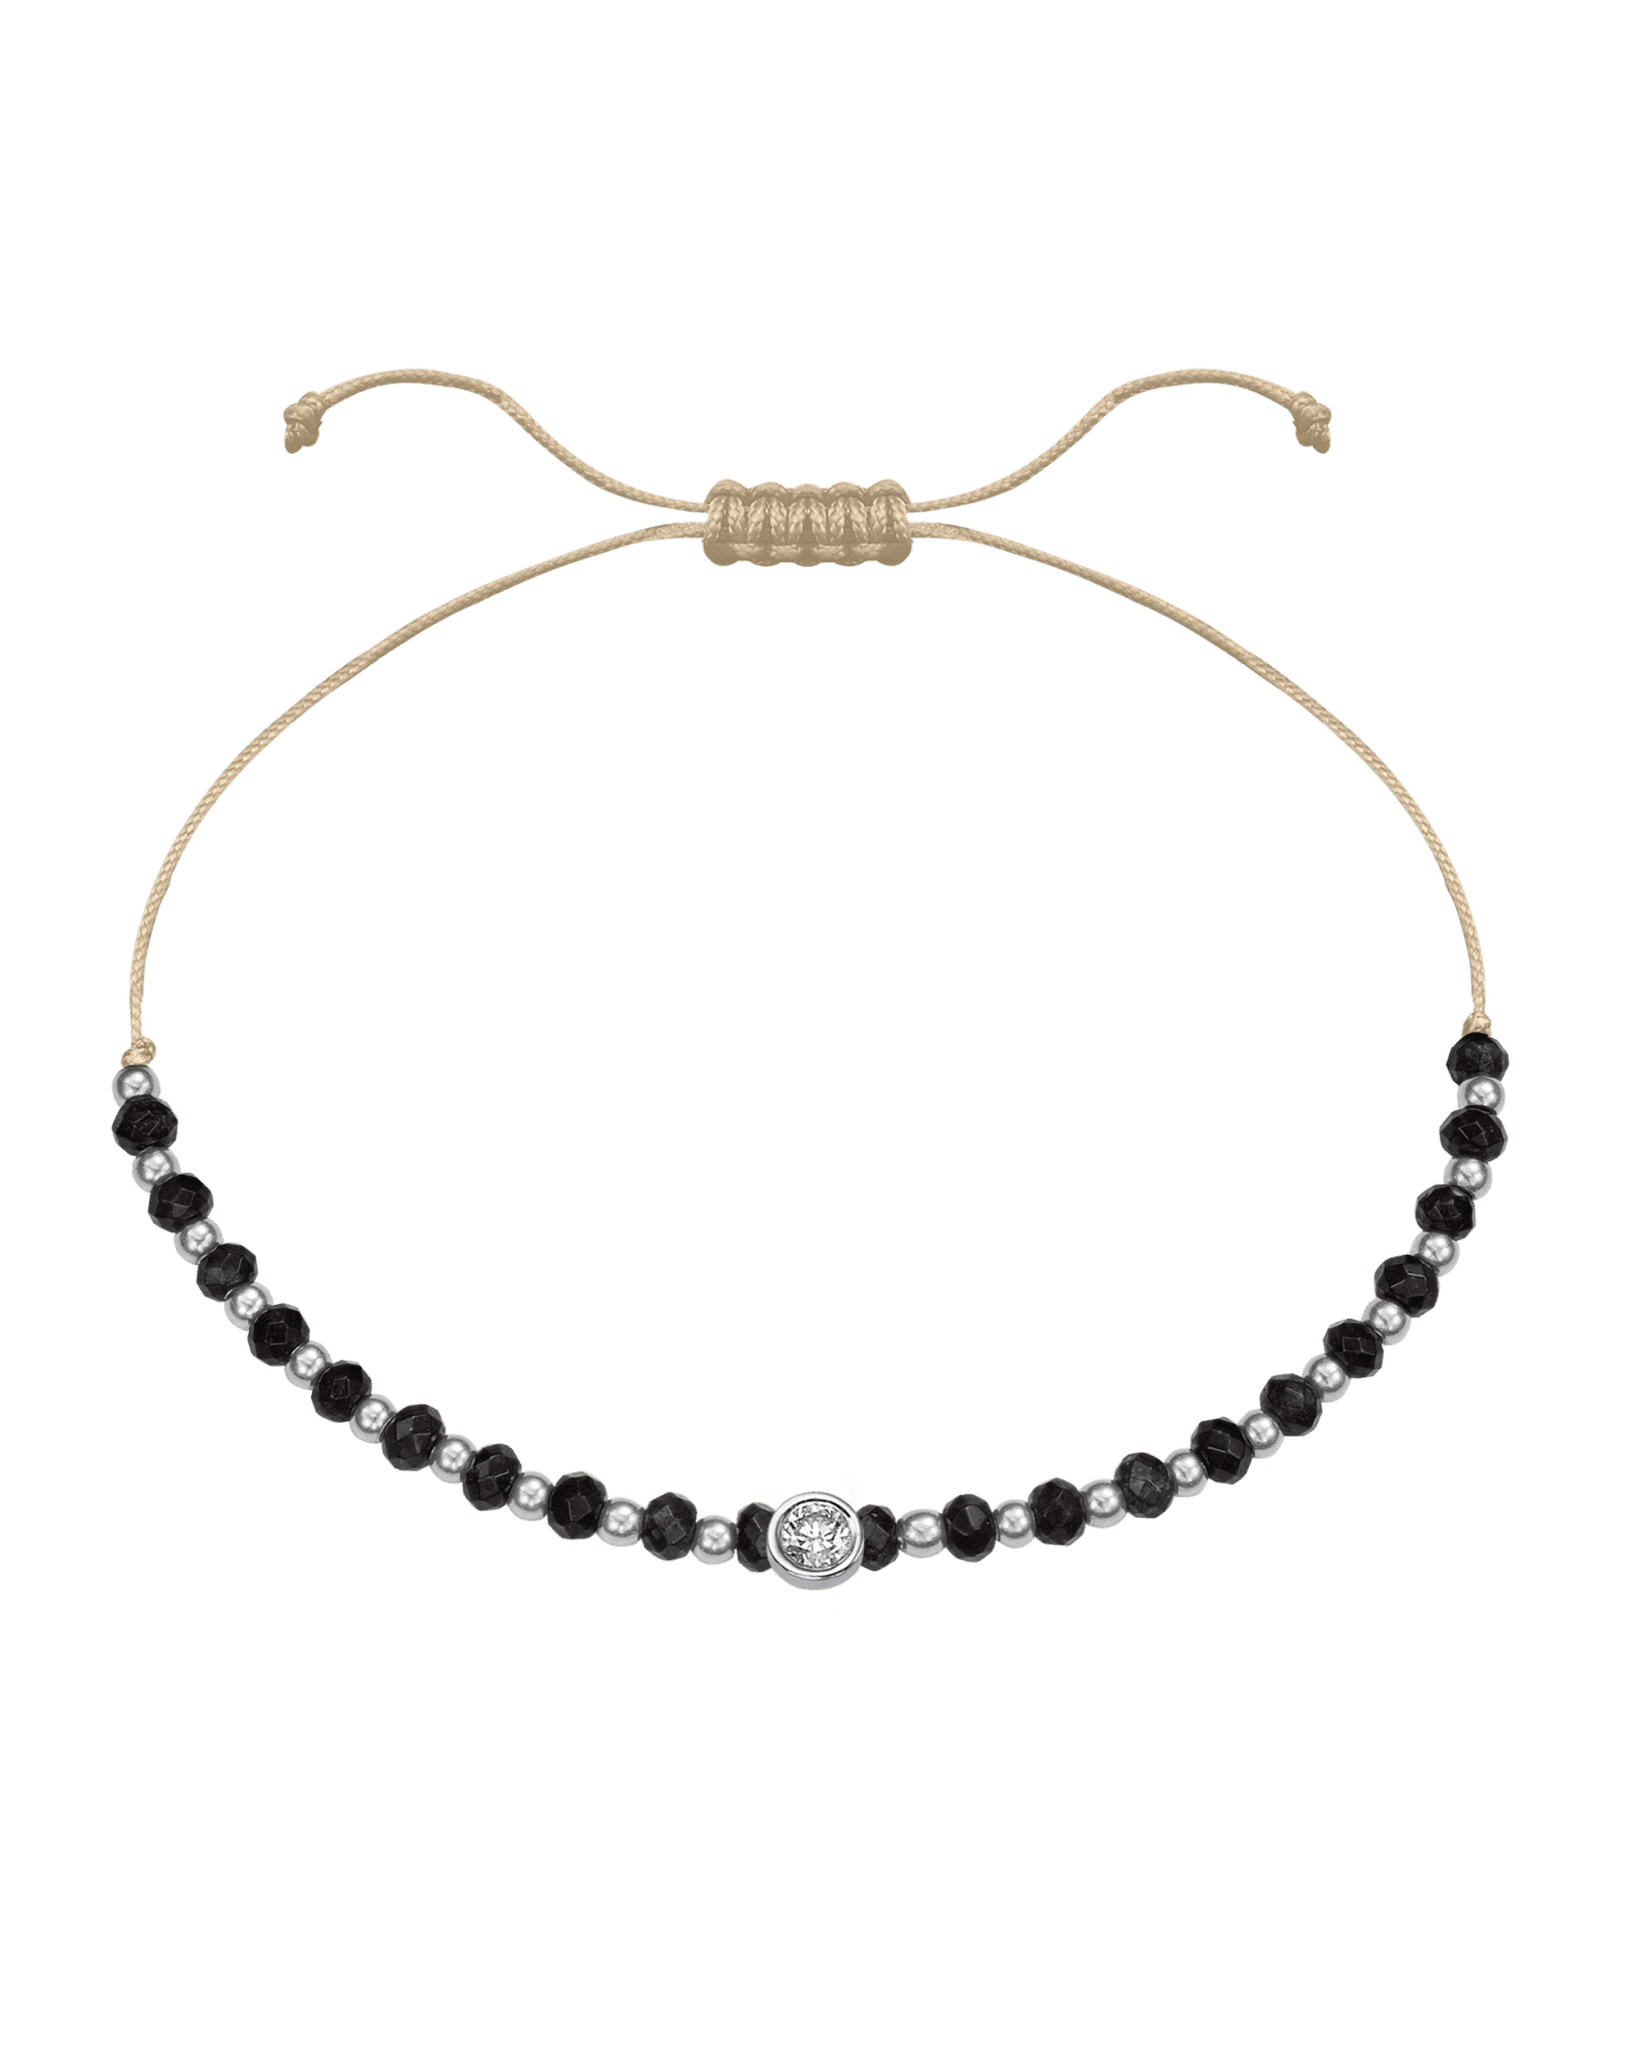 Black Onyx Gemstone String of Love Bracelet for Protection - 14K White Gold Bracelets 14K Solid Gold Beige Large: 0.1ct 